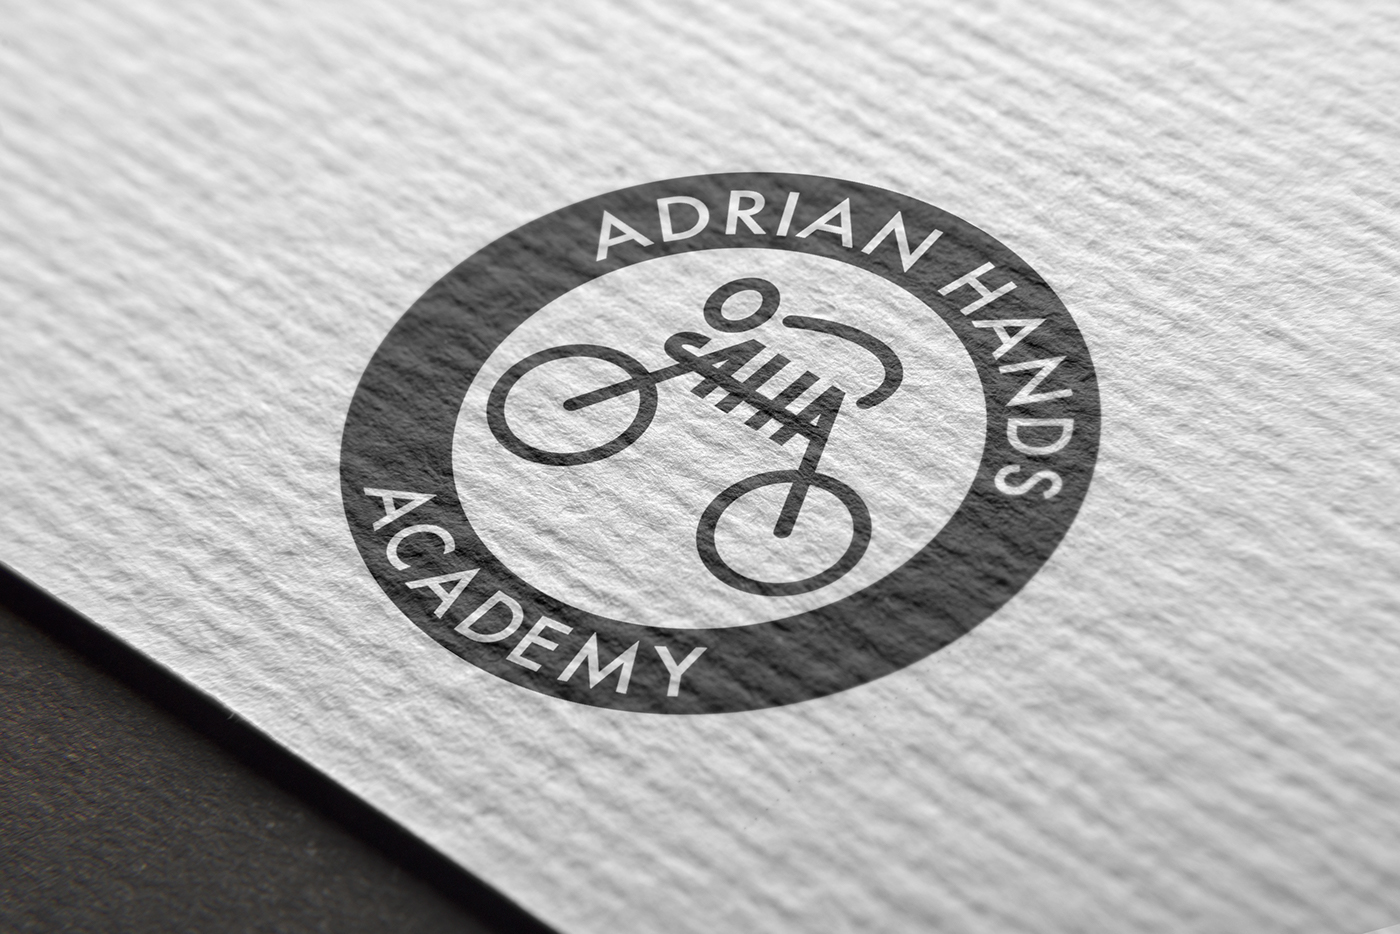 school logo design charter Illustrator Bicycle adrian hands